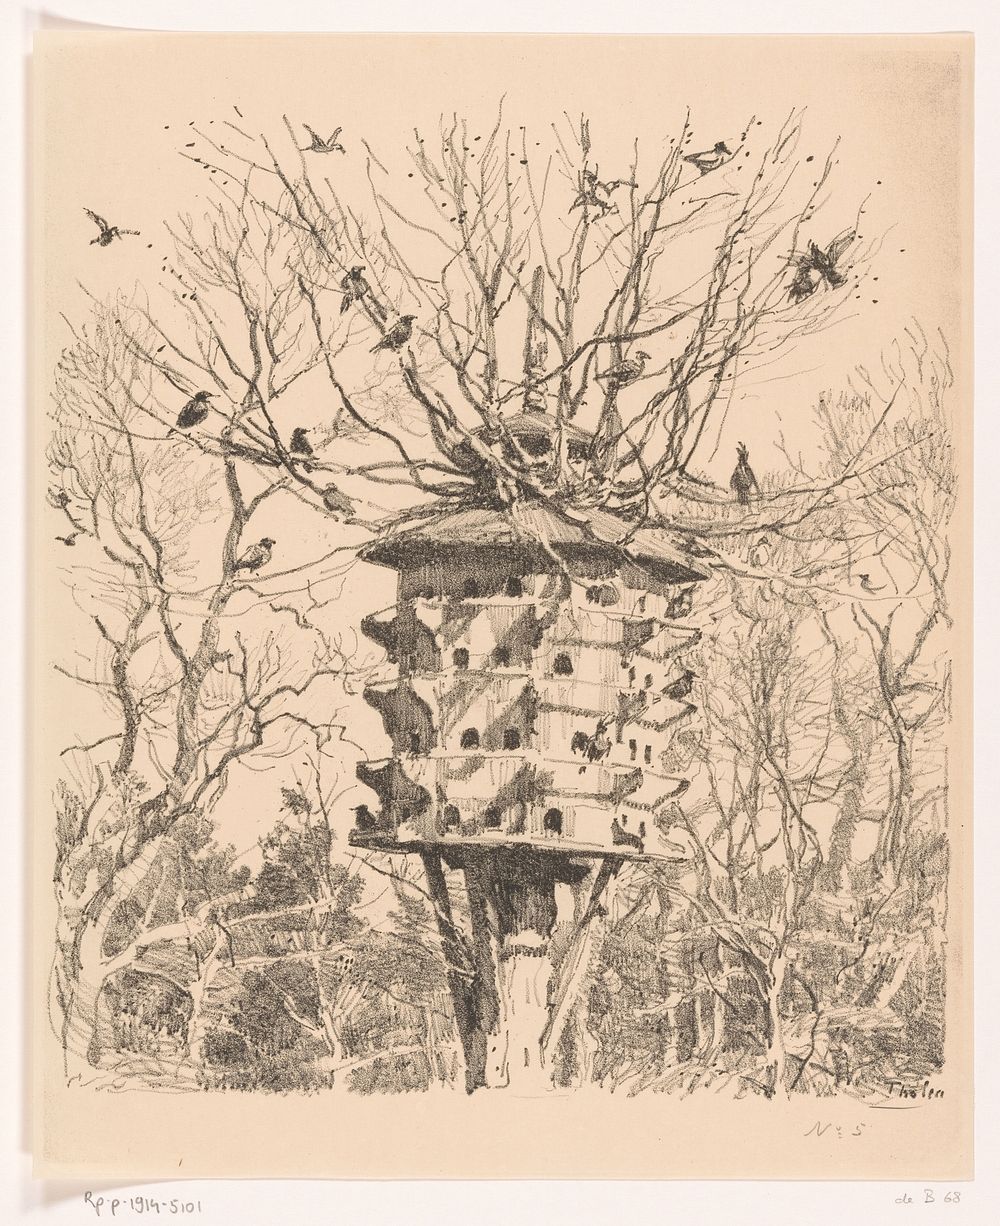 Groot vogelhuis aan een boom (1870 - 1914) by Willem Bastiaan Tholen